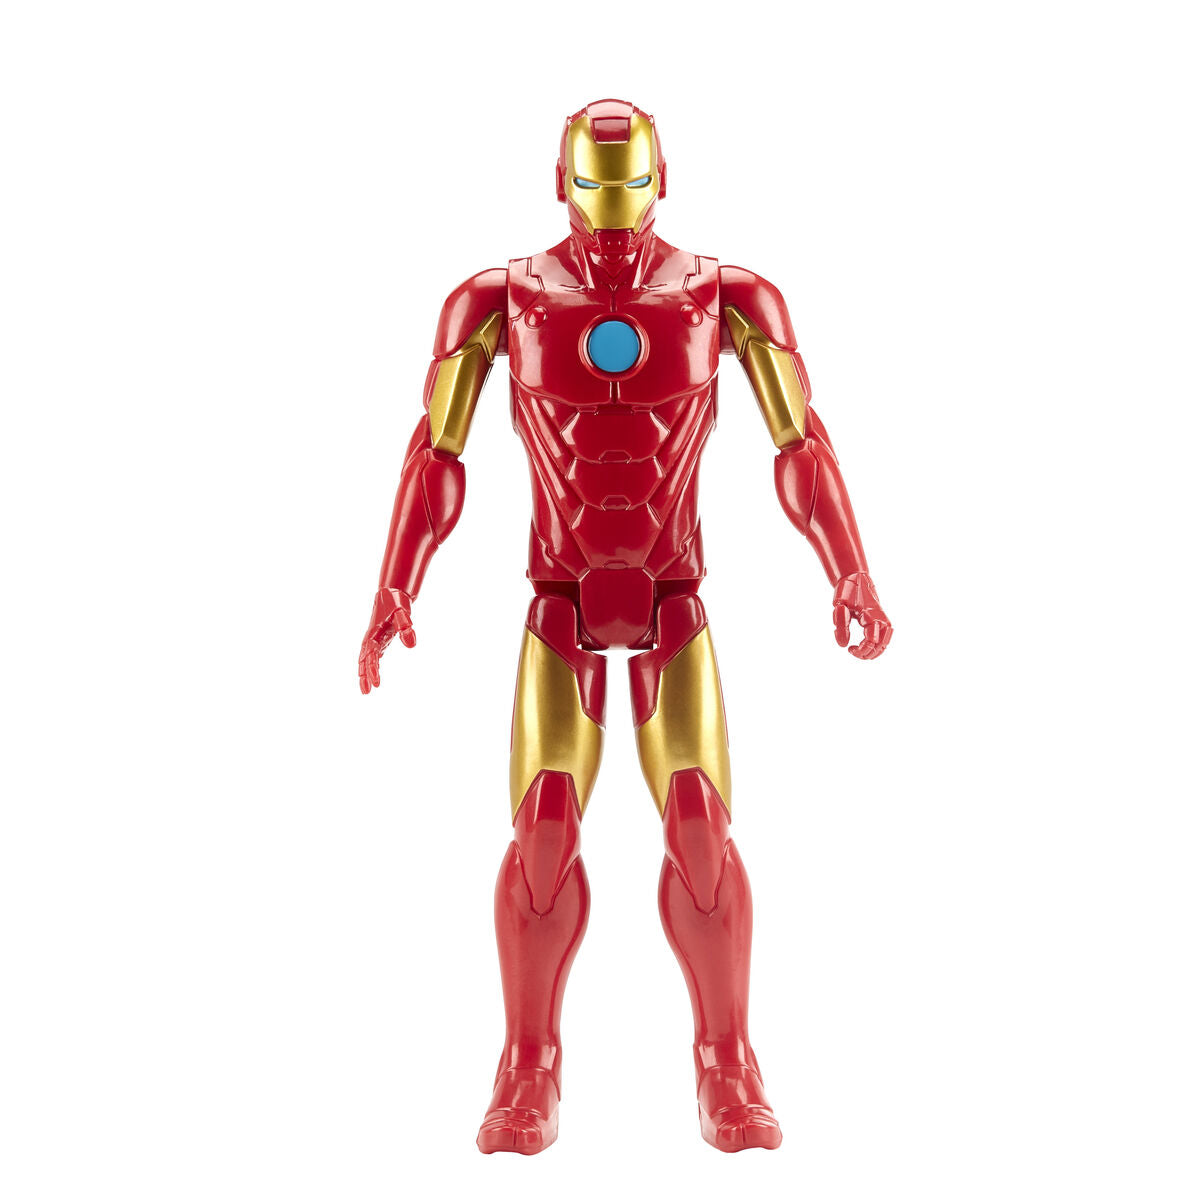 Statuetta Articolata The Avengers Titan Hero Iron Man 30 cm - Disponibile in 3-4 giorni lavorativi